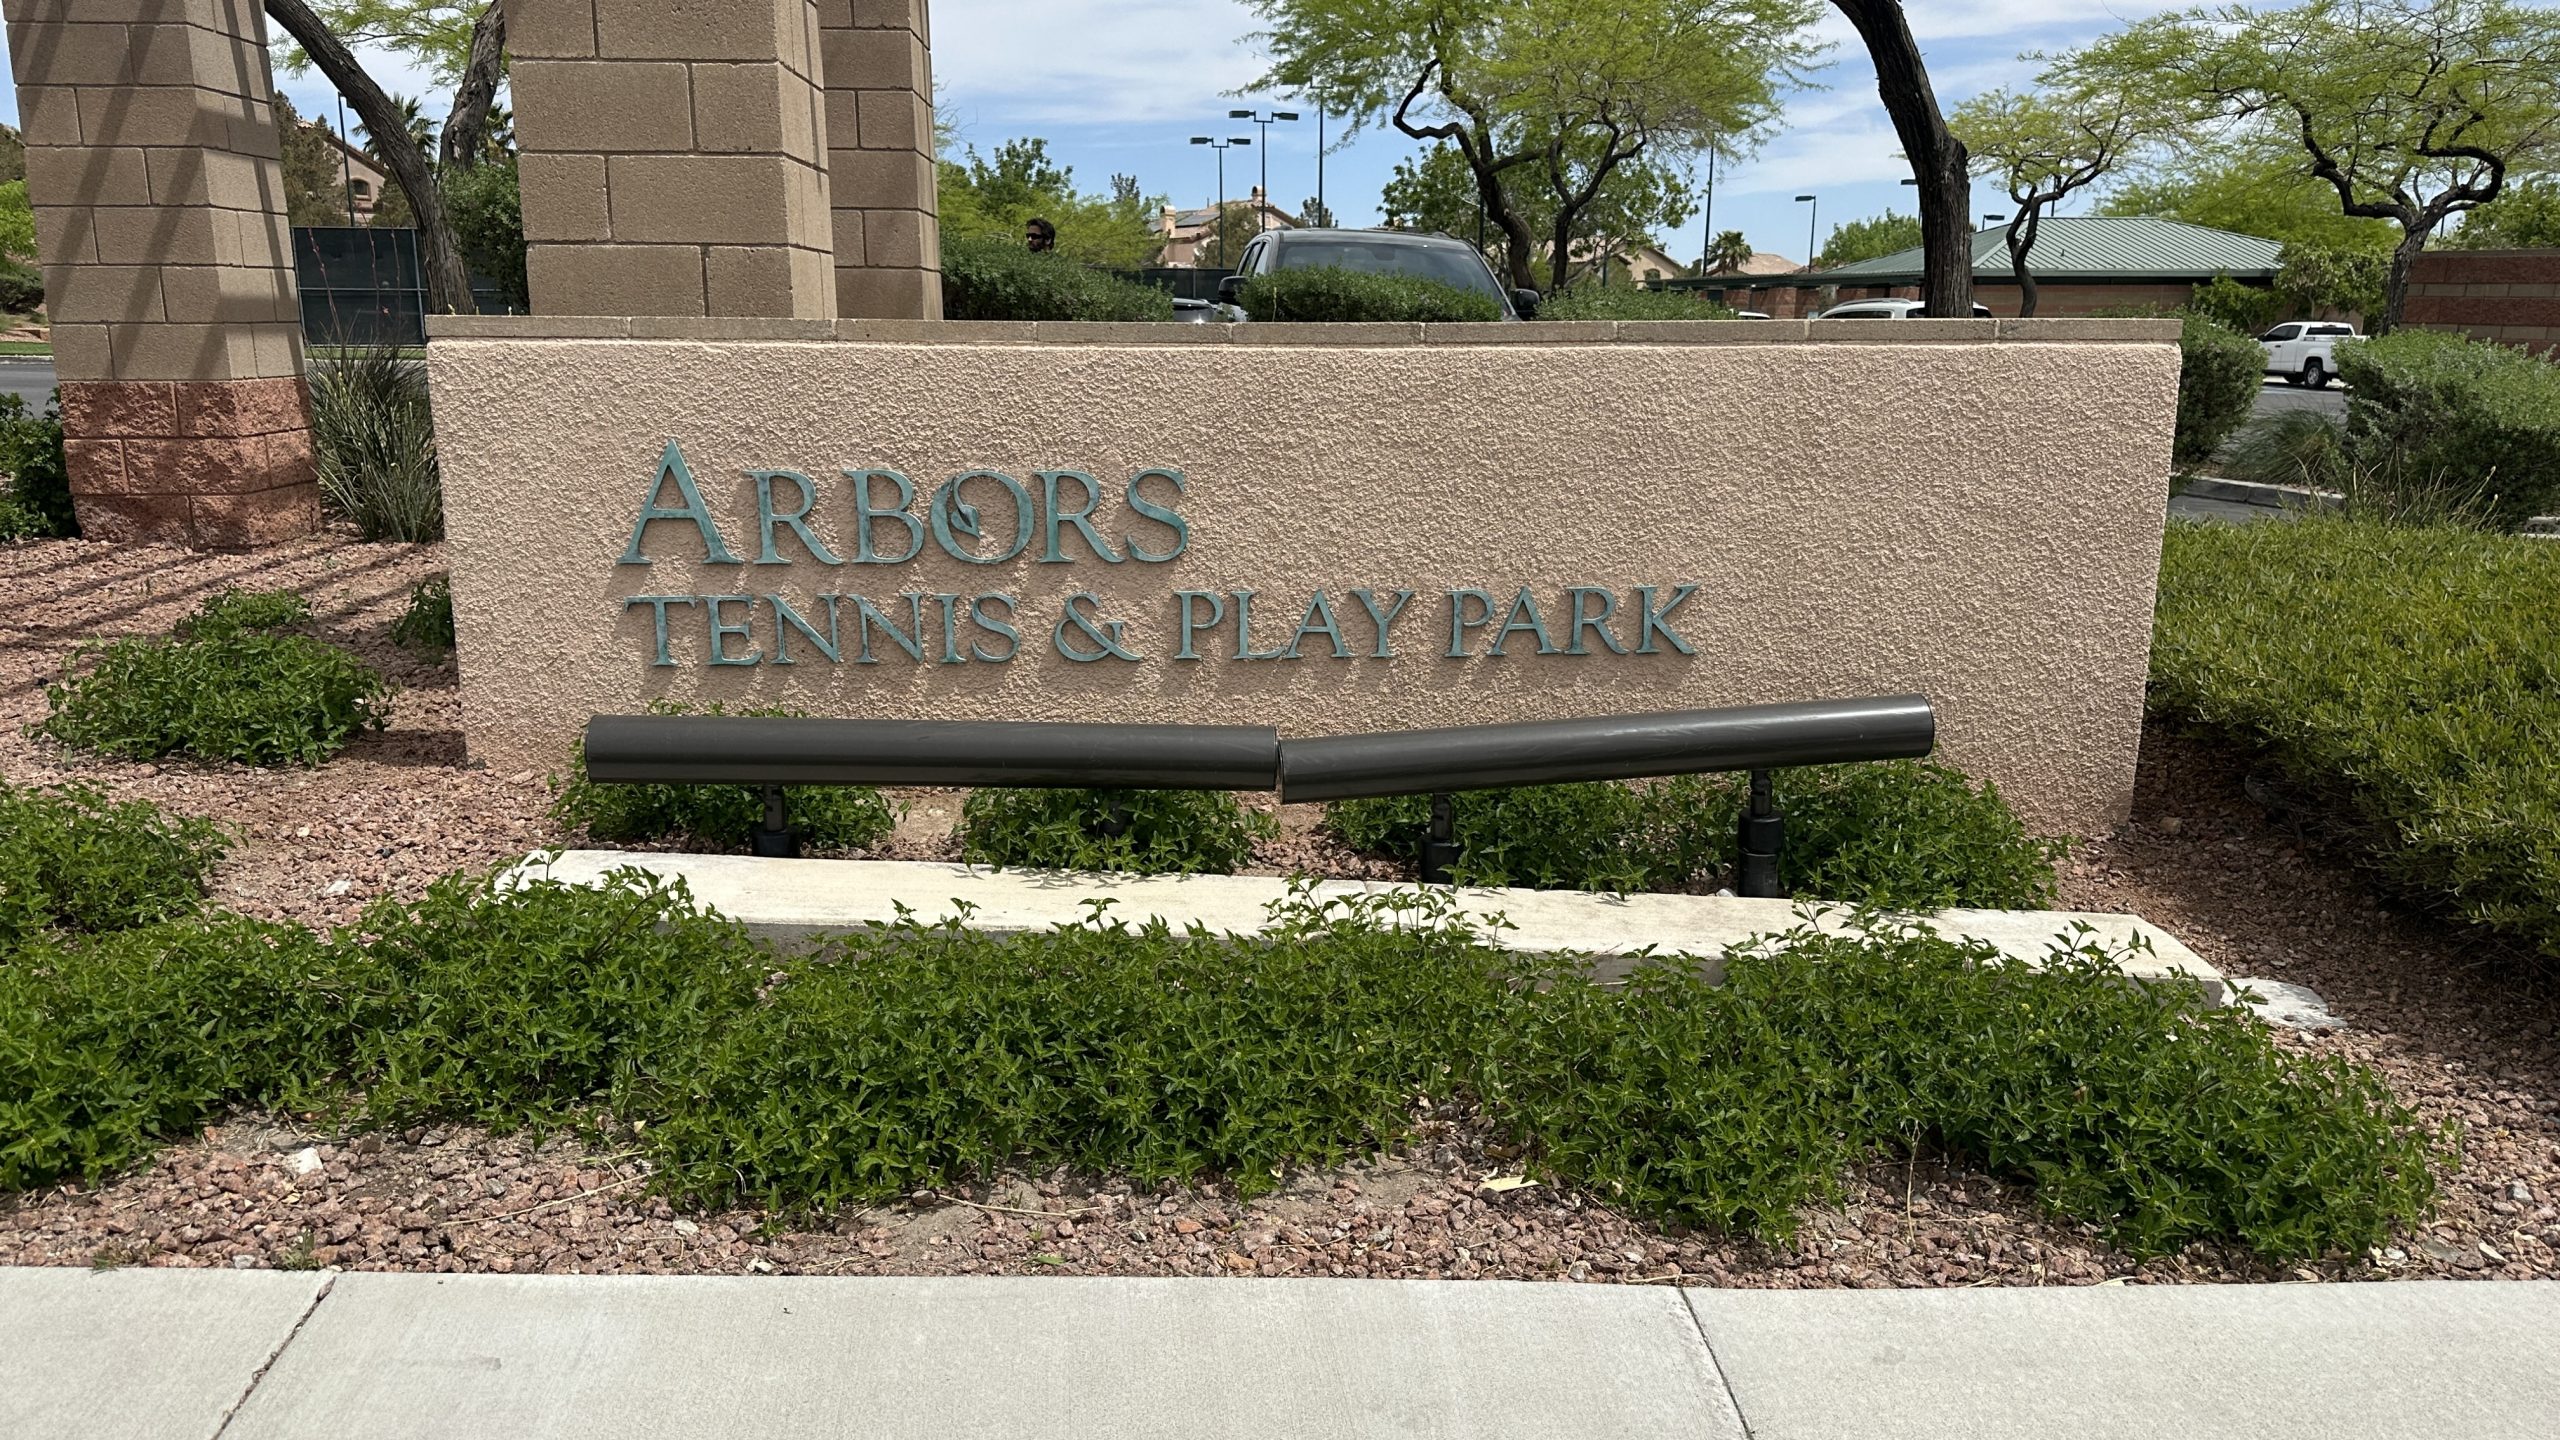 The Arbors Tennis & Play Park